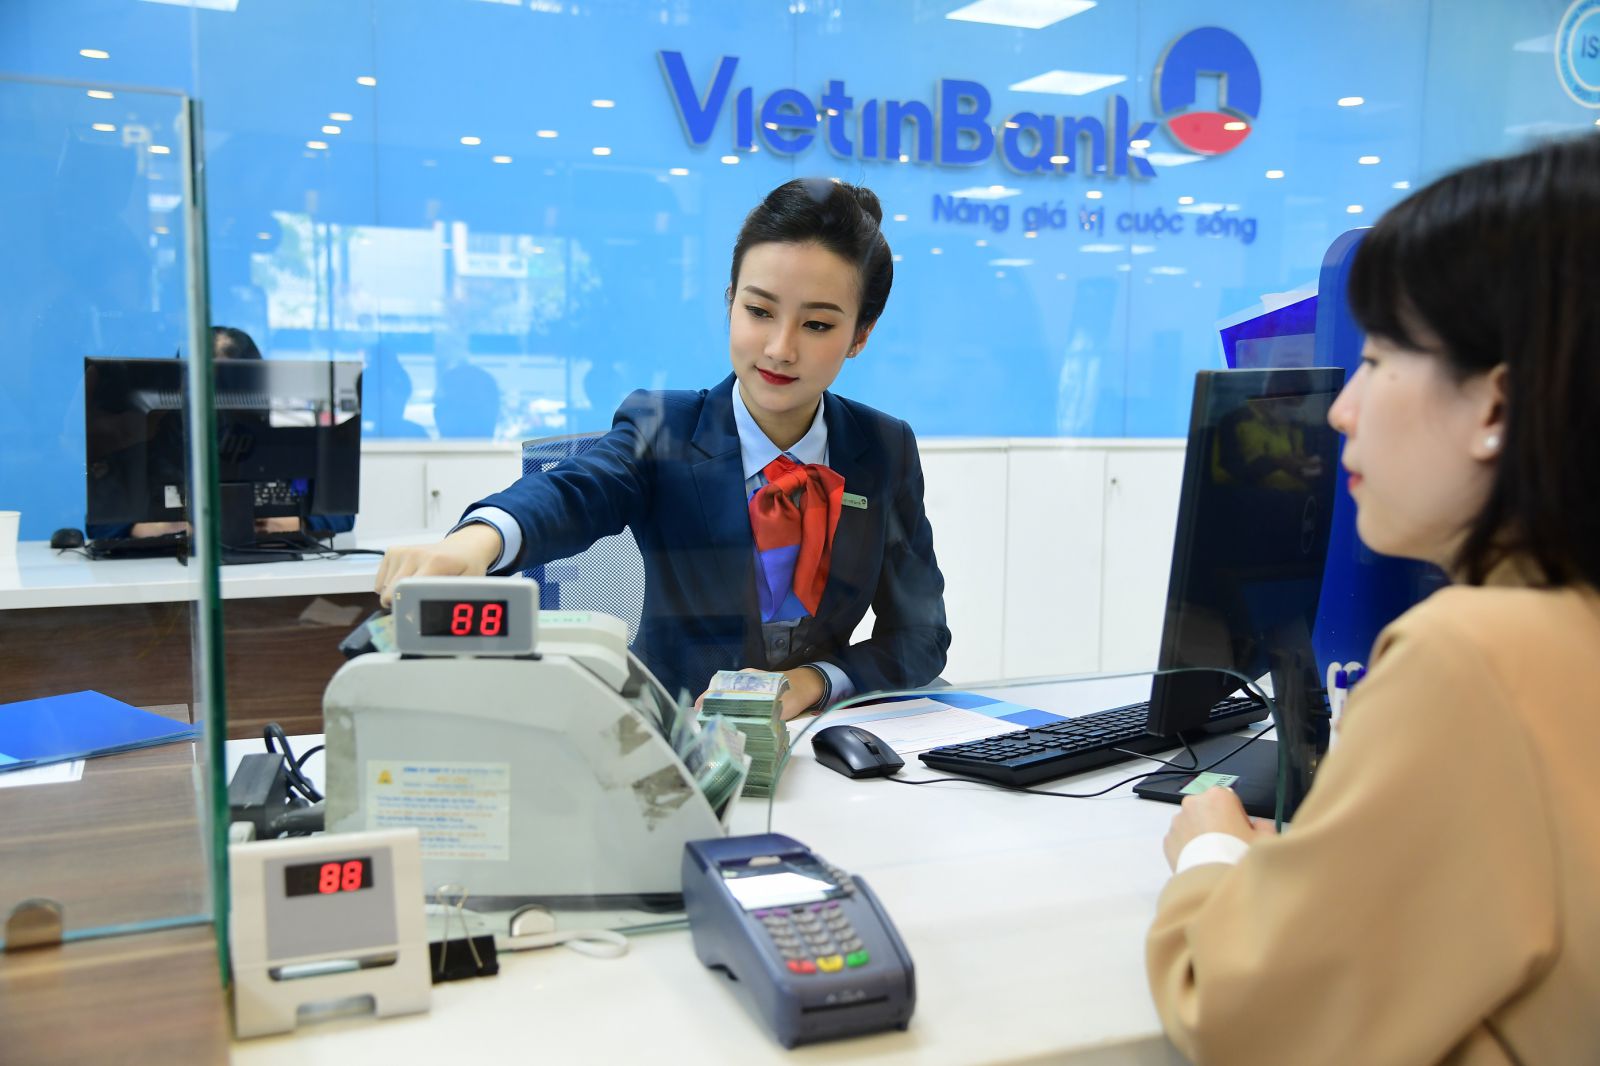 Viettinbank hiện đang được xếp đứng đầu bảng về doanh số lợi nhuận 